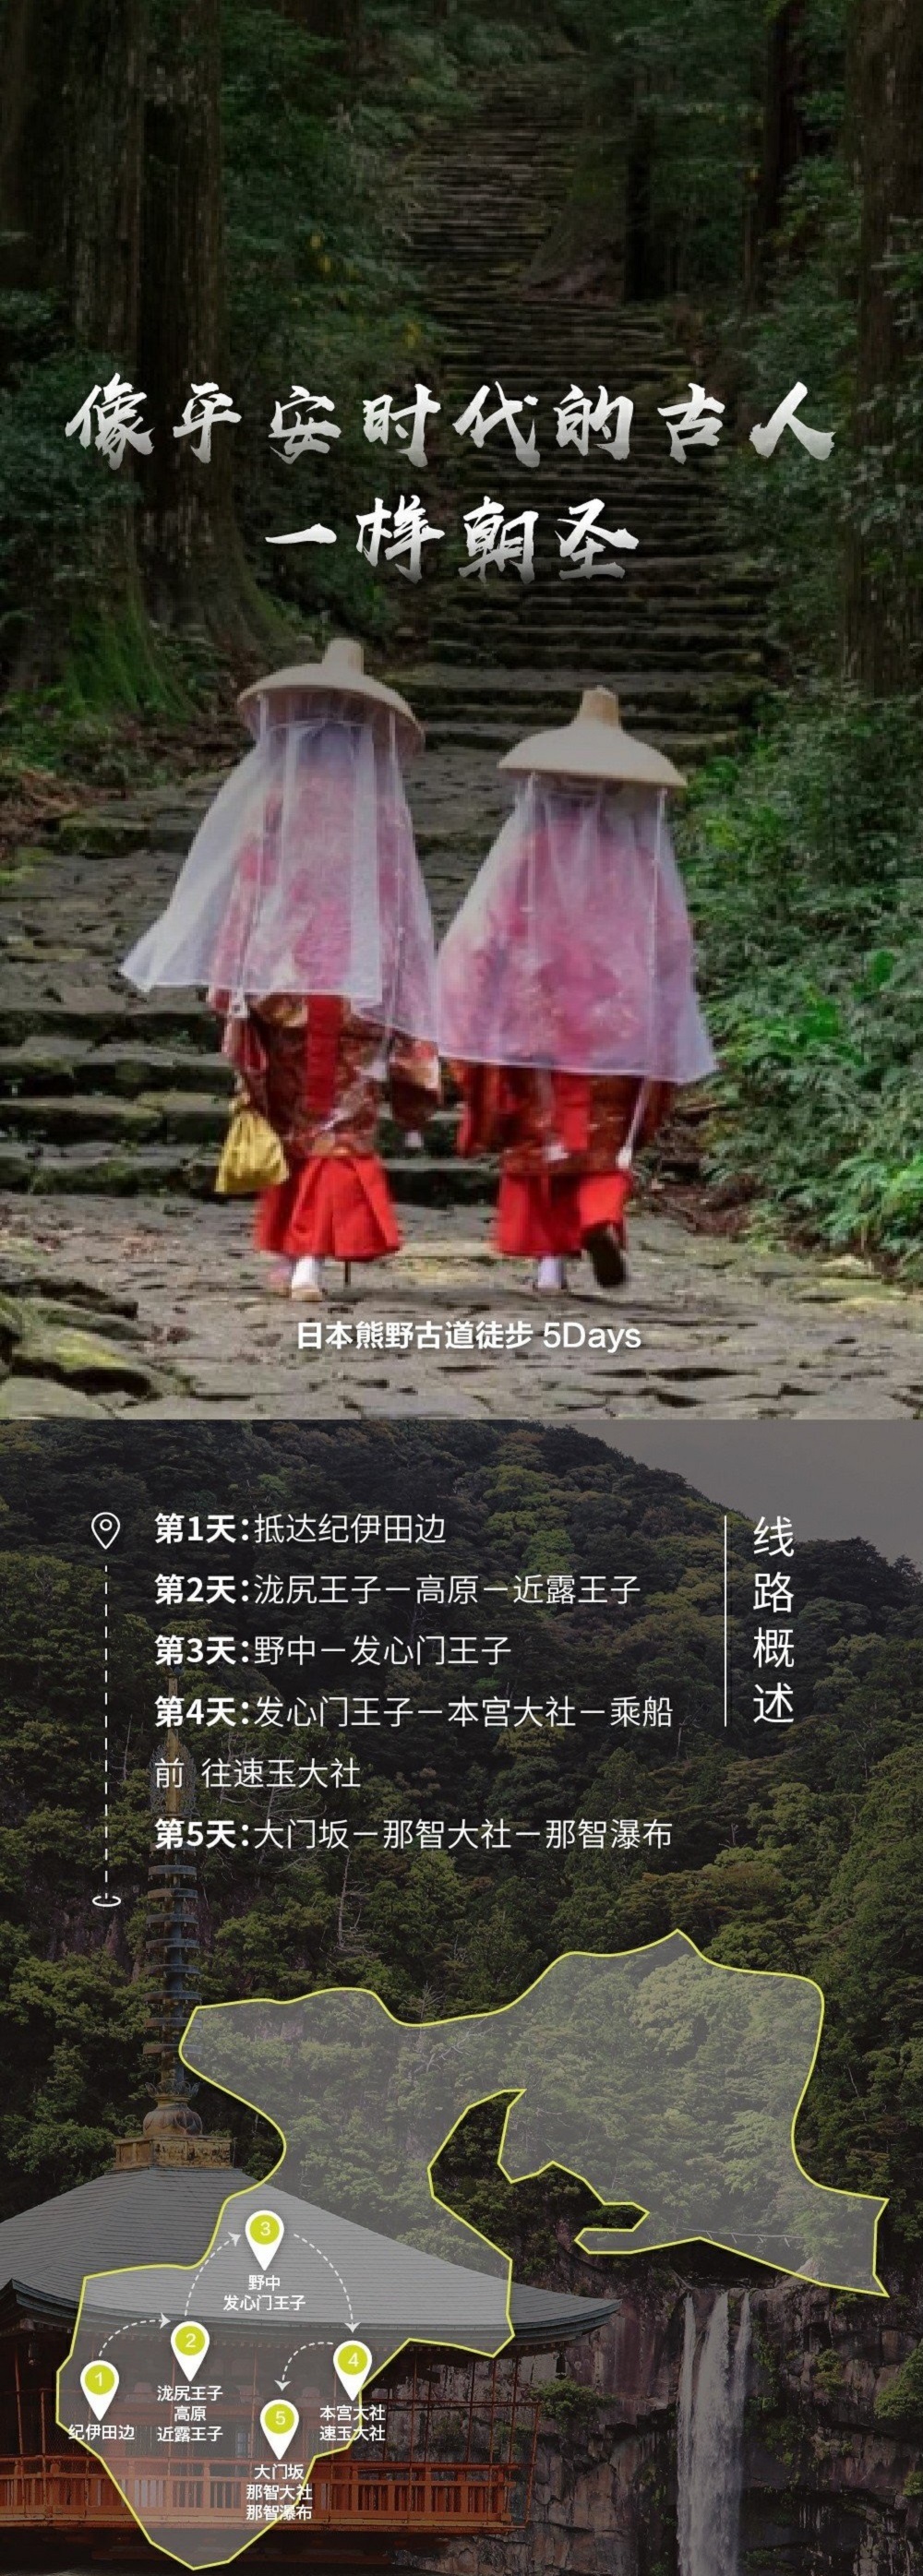 熊野古道· 朝圣之路】世界唯二世界文化遗产线路：山与海の歌，地道川汤